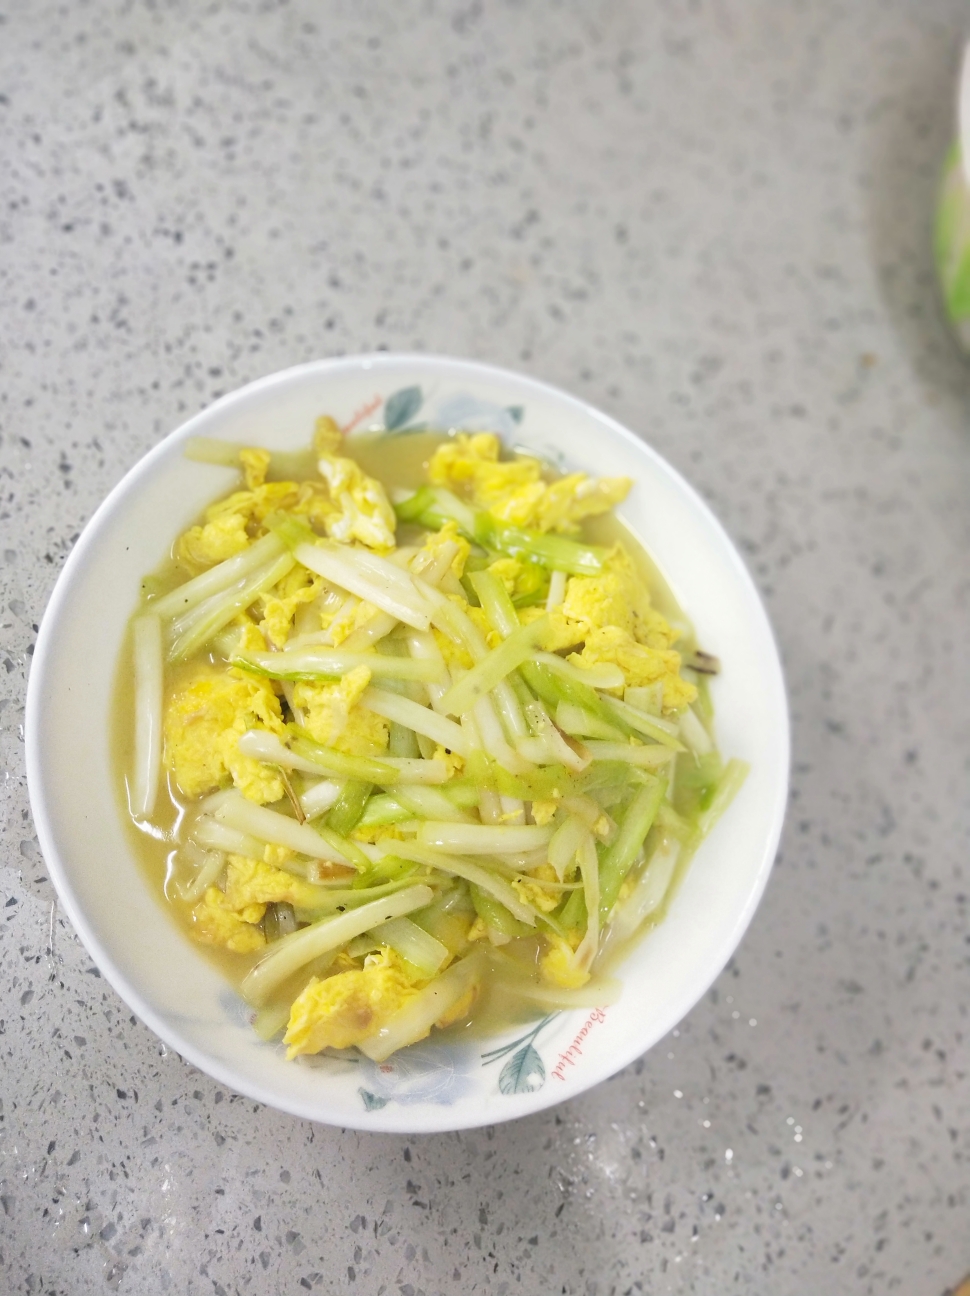 韭黄炒鸡蛋的做法